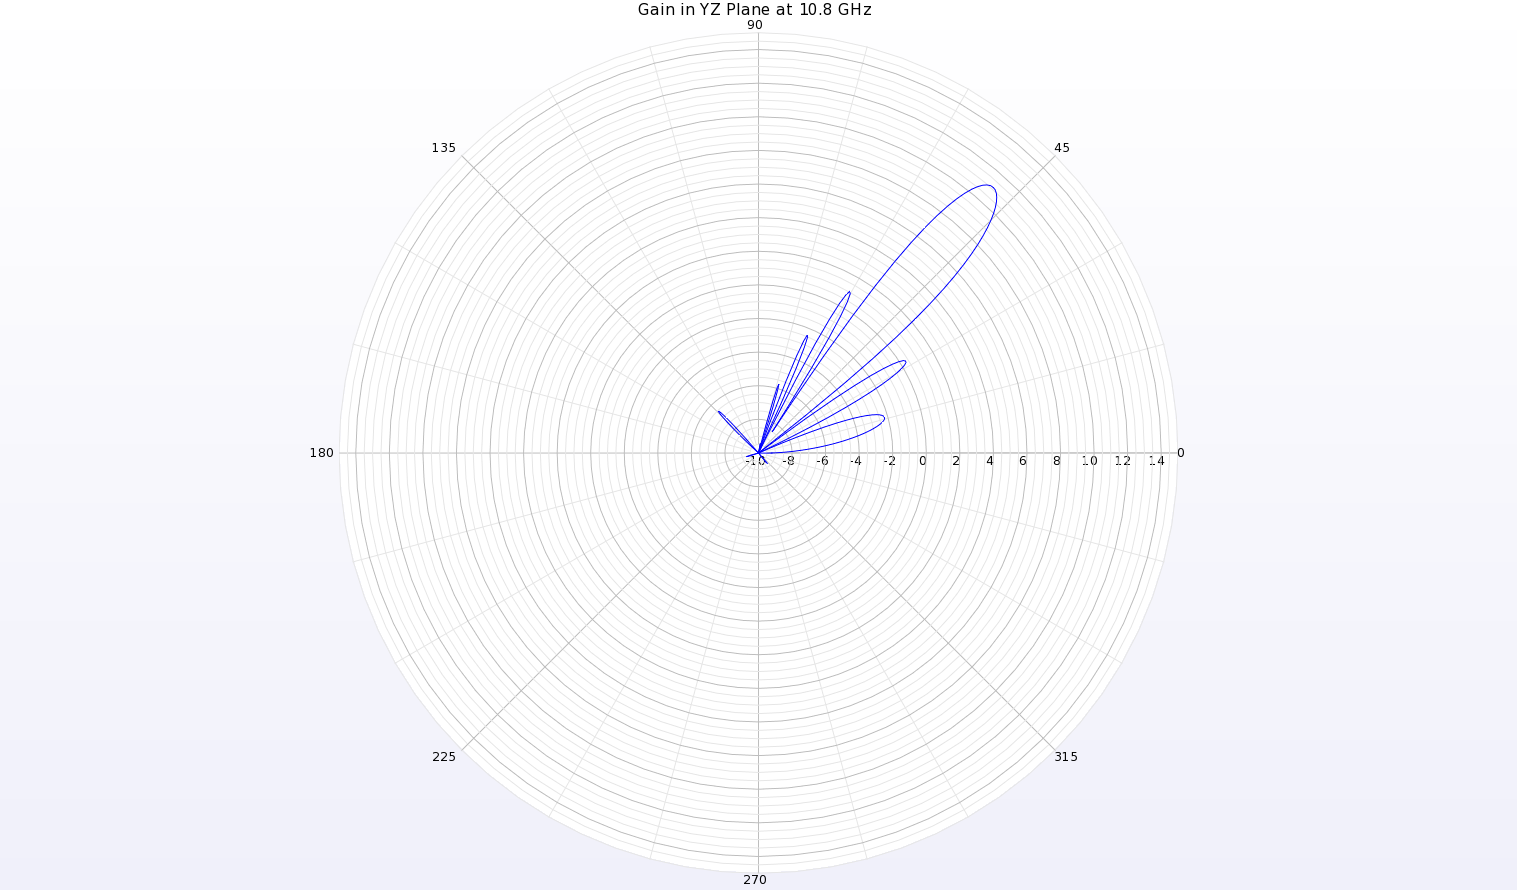 Bild 10: Ein Polardiagramm des Gewinndiagramms bei 10,8 GHz in der YZ-Ebene der Antenne zeigt einen Strahl bei theta=49 Grad mit einem Spitzengewinn von 11,1 dBi.